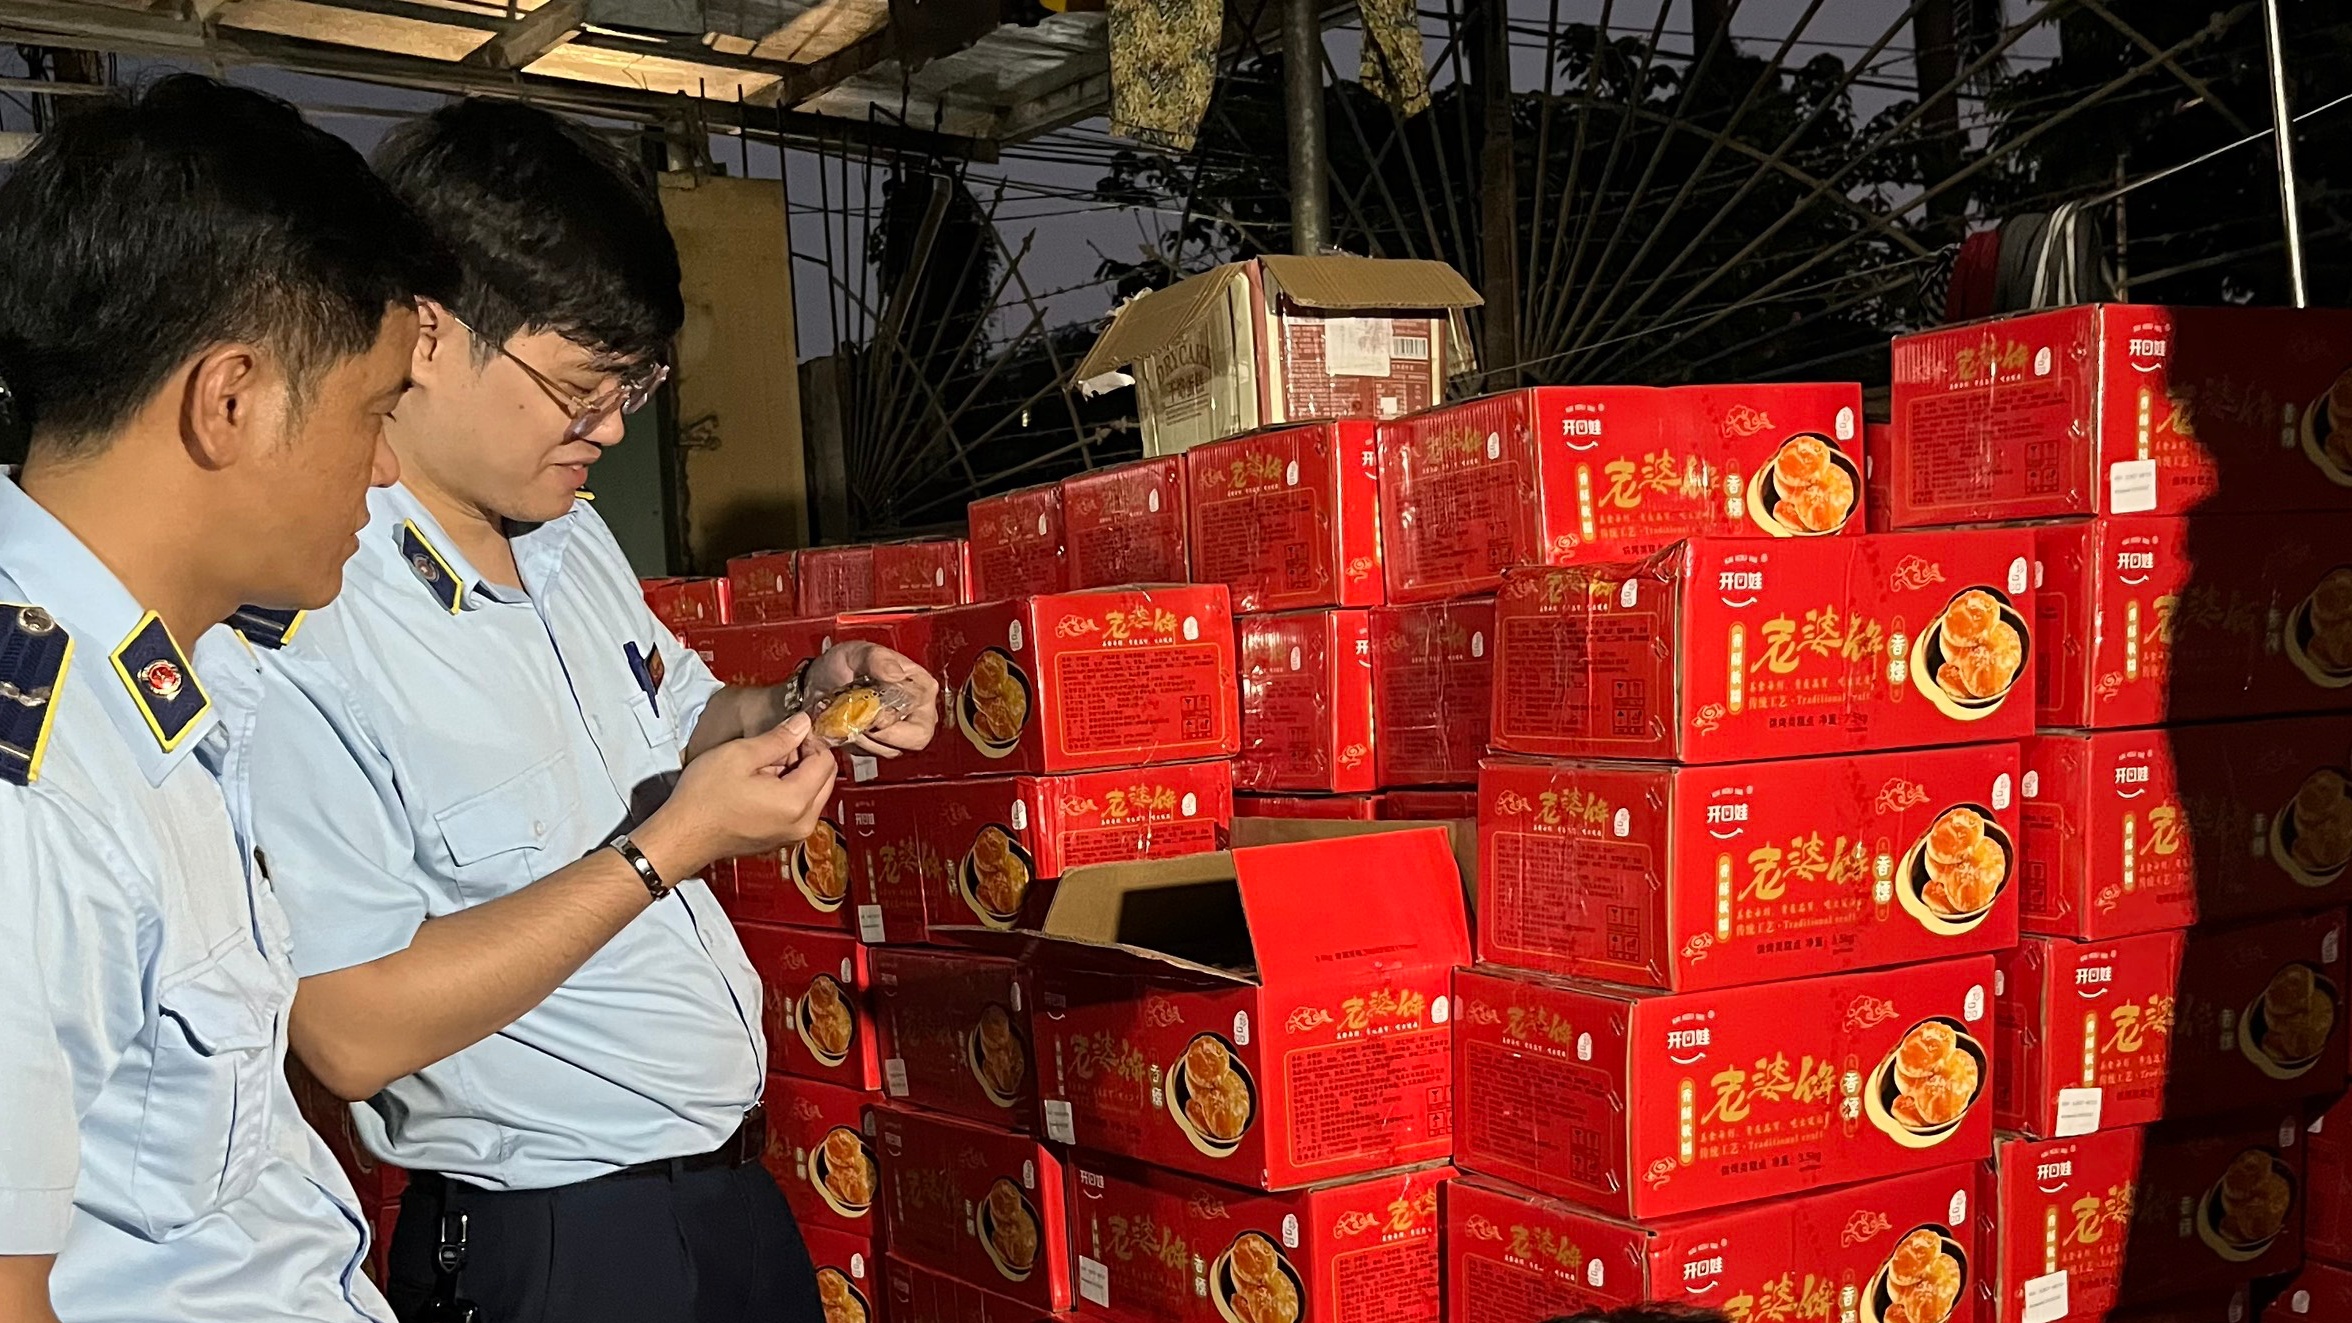 Quản lý thị trường Hà Nội: Tiếp tục phát hiện số lượng lớn bánh trung thu nhập lậu